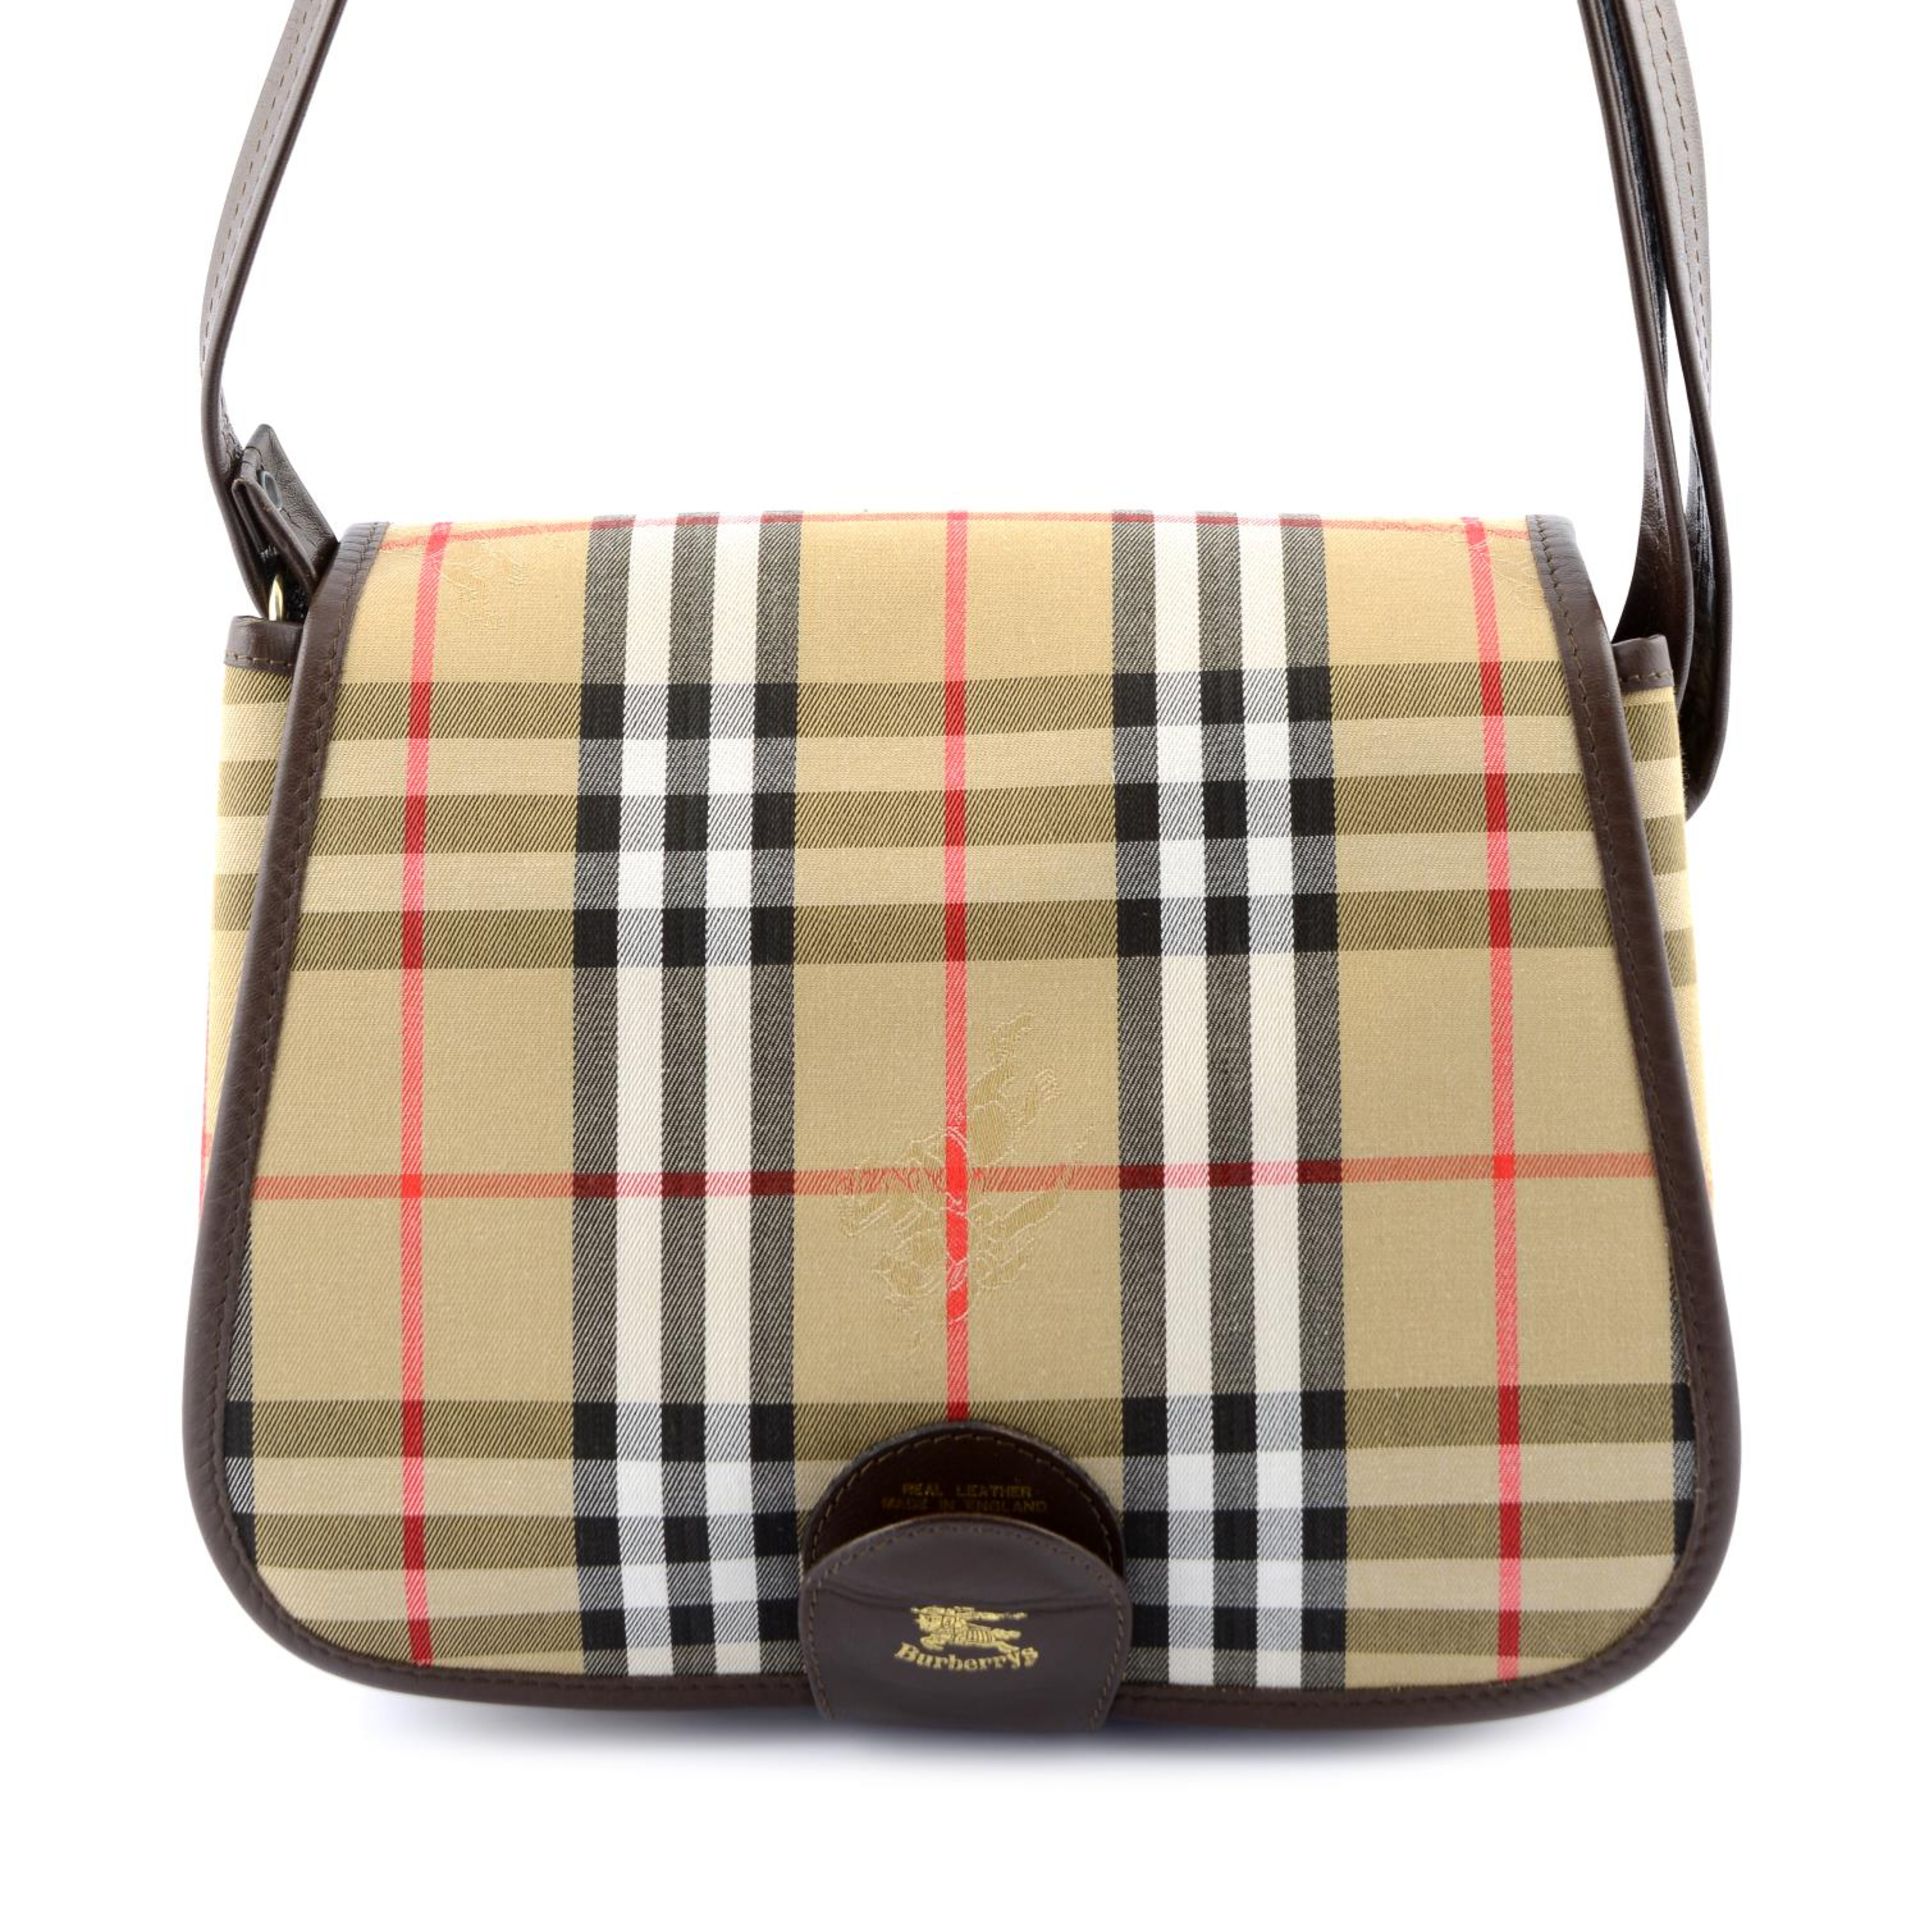 BURBERRY - a Haymarket Check handbag.